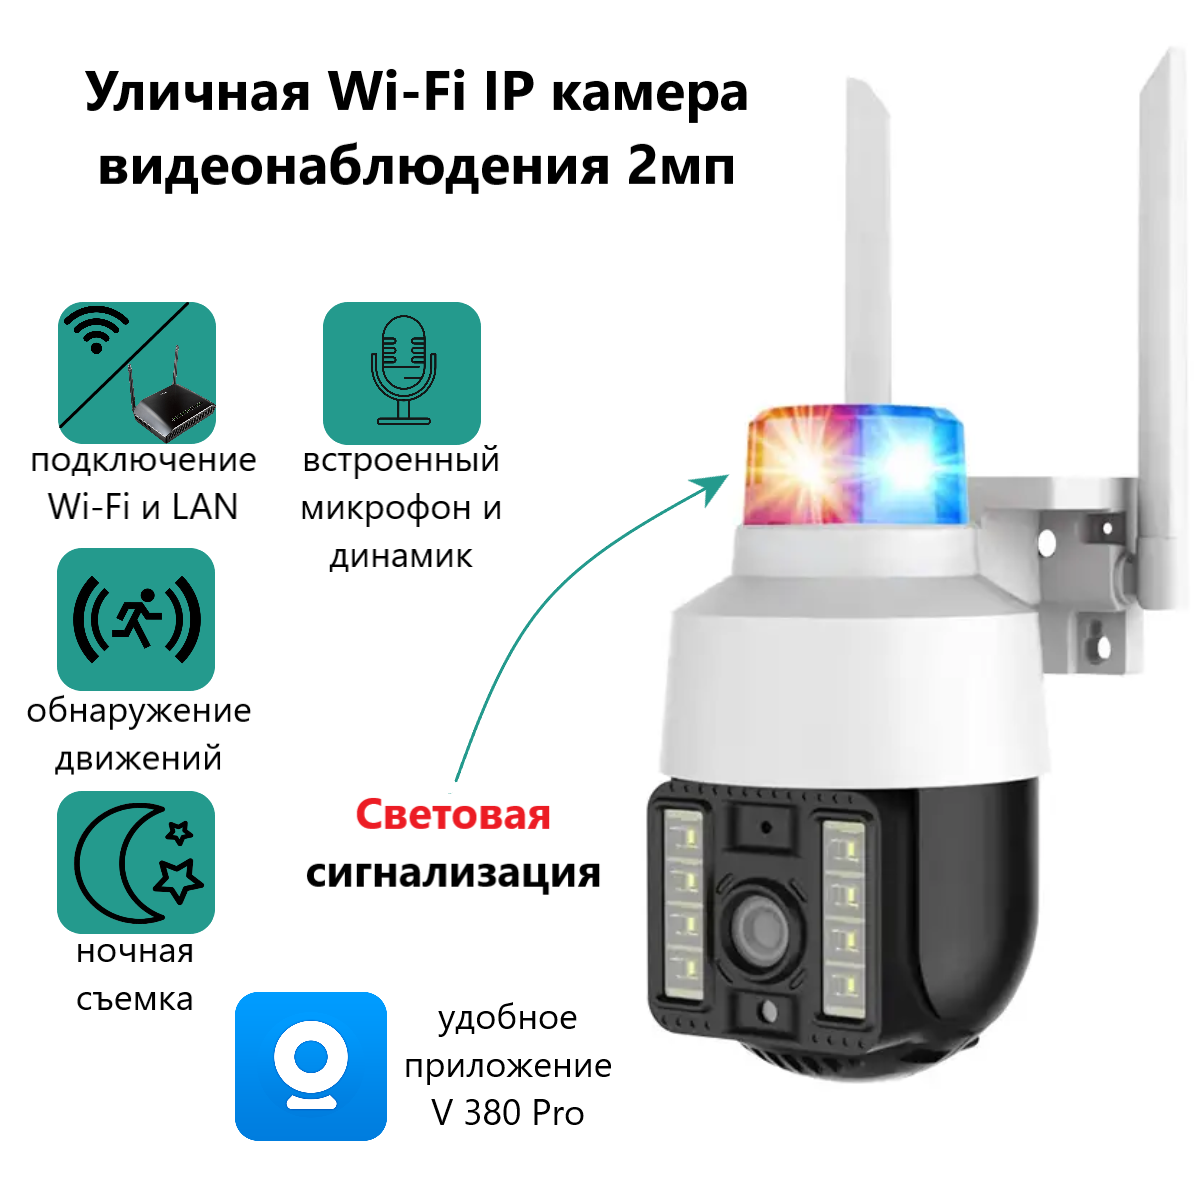 Уличная Wi-Fi IP камера ABC видеонаблюдения 2мп, световая сигнализация